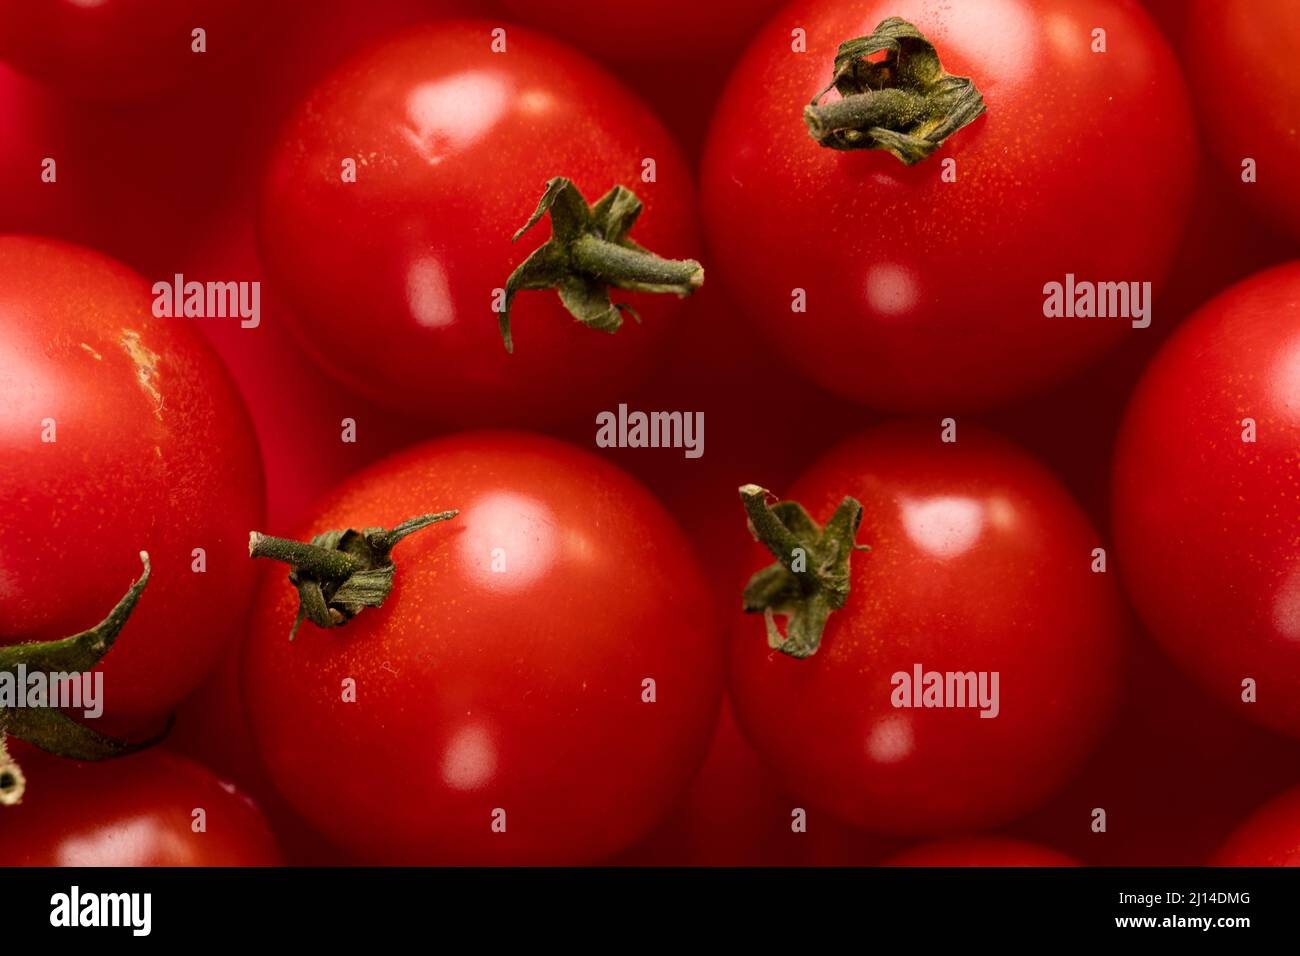 Primer plano de fotograma completo de pila de tomates rojos frescos Foto de stock